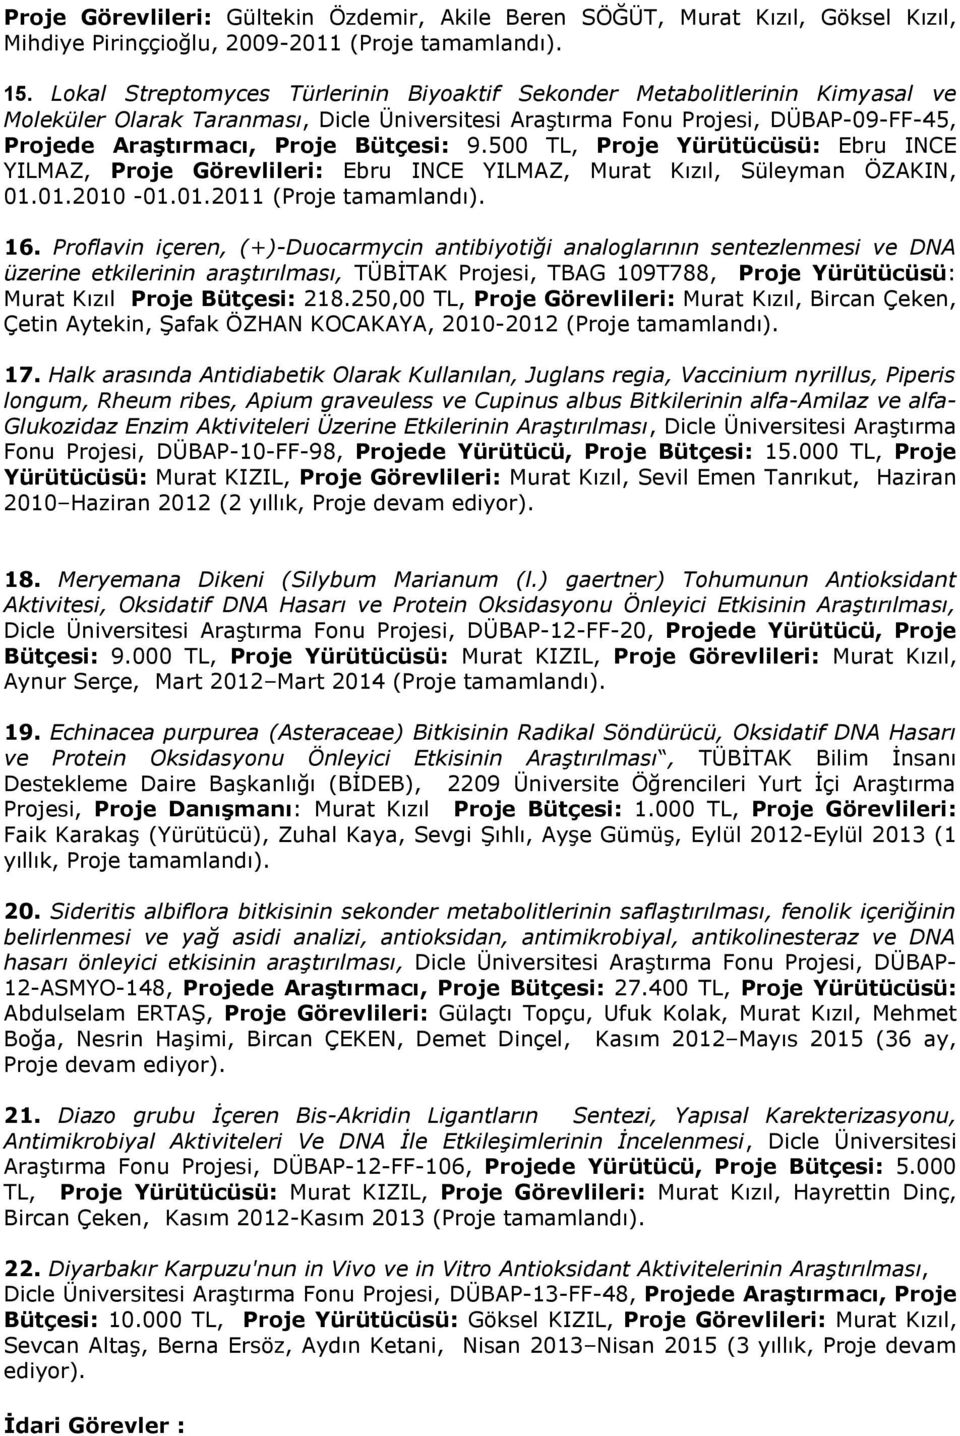 Bütçesi: 9.500 TL, Proje Yürütücüsü: Ebru INCE YILMAZ, Proje Görevlileri: Ebru INCE YILMAZ, Murat Kızıl, Süleyman ÖZAKIN, 01.01.2010-01.01.2011 (Proje tamamlandı). 16.